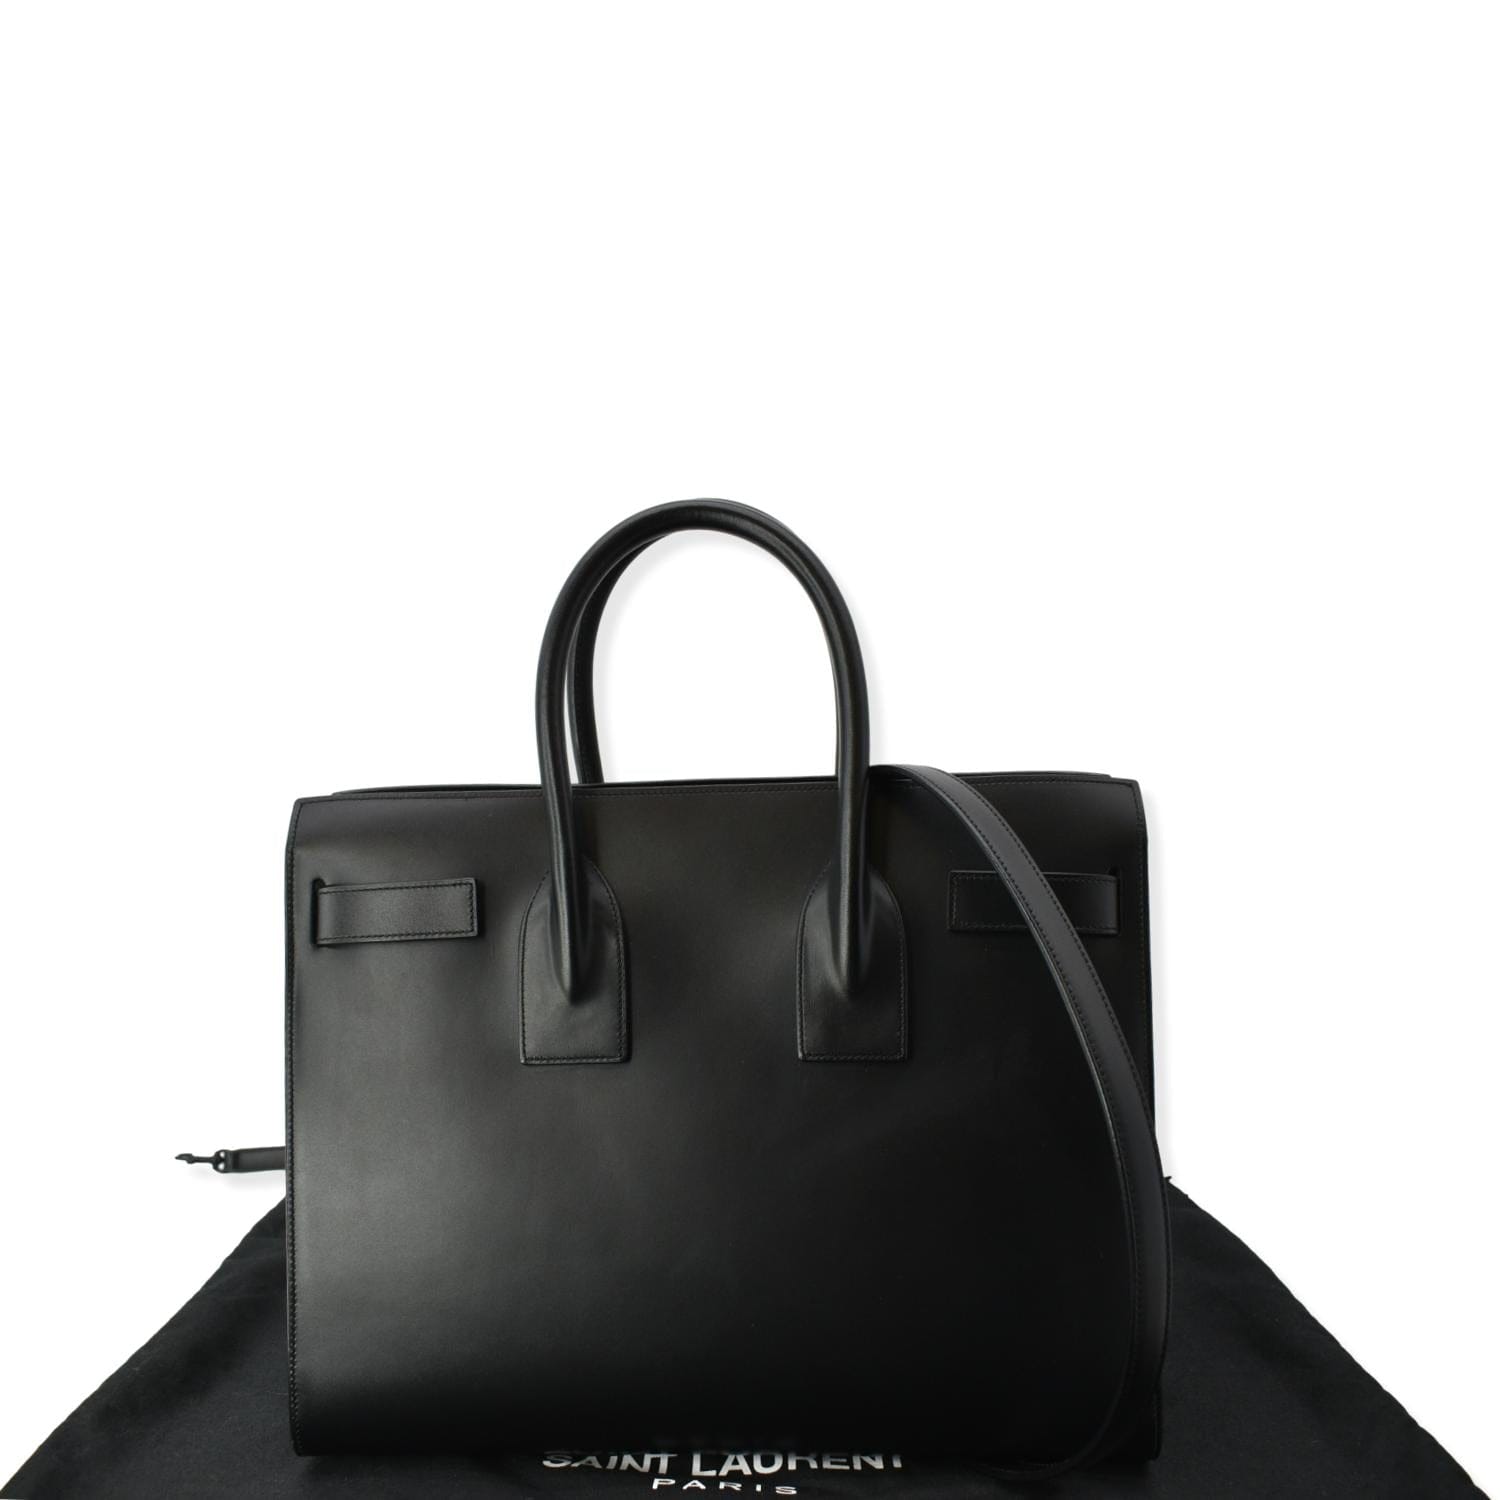 Saint Laurent Black Bags & Handbags for Women | eBay